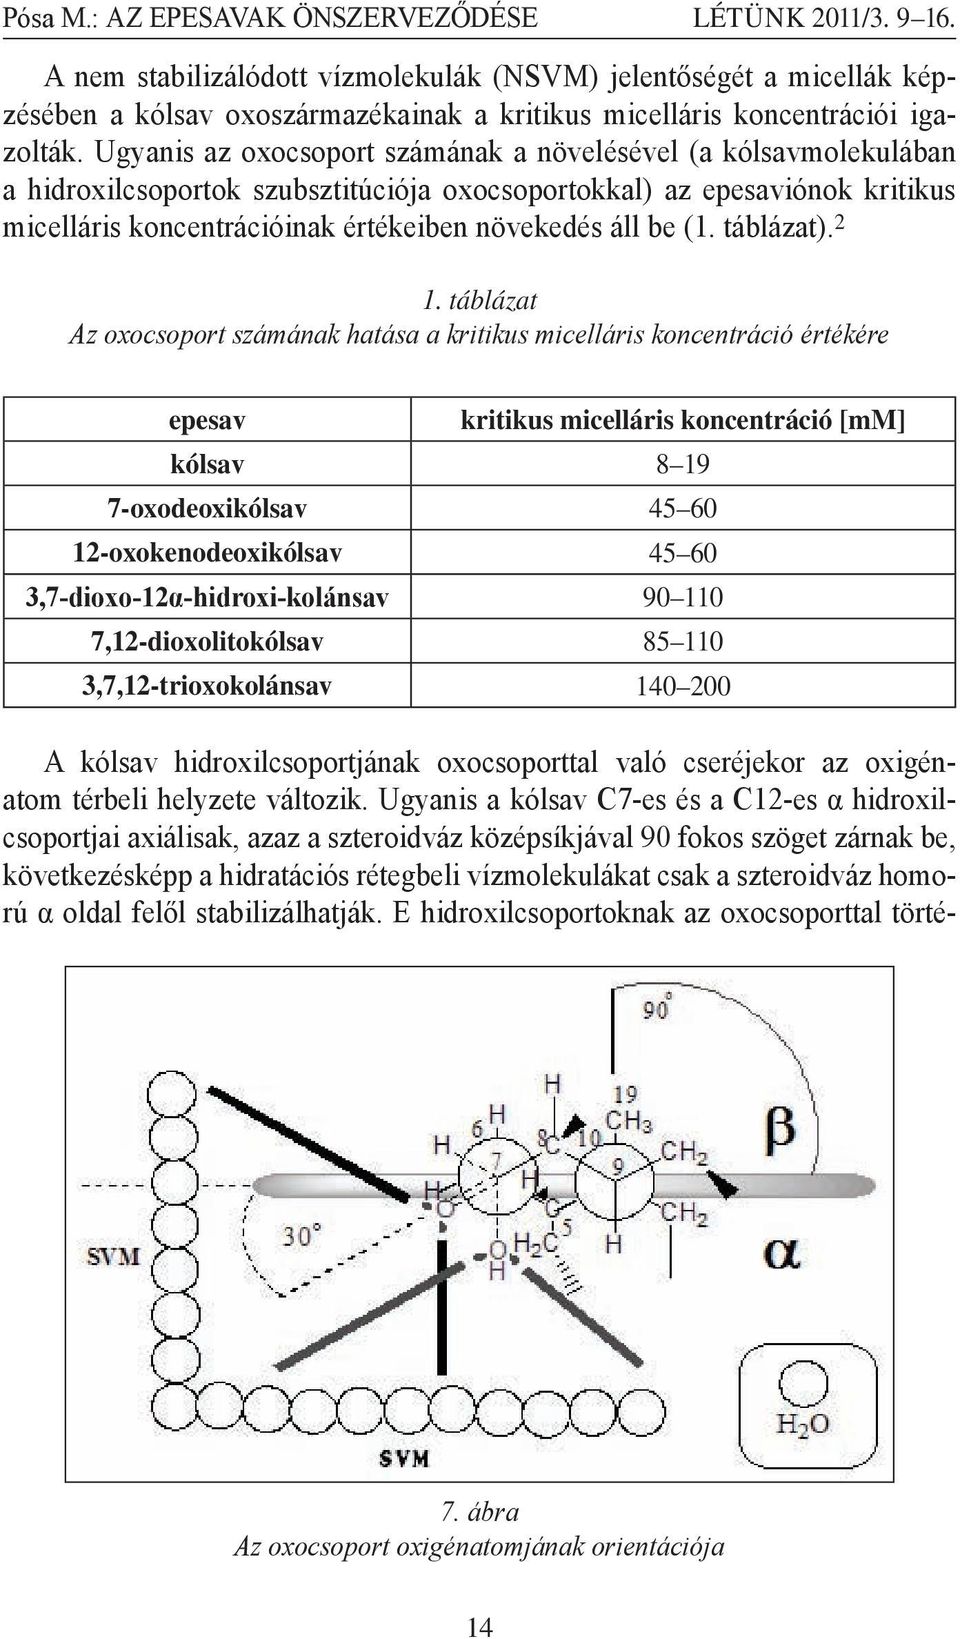 Ugyanis az oxocsoport számának a növelésével (a kólsavmolekulában a hidroxilcsoportok szubsztitúciója oxocsoportokkal) az epesaviónok kritikus micelláris koncentrációinak értékeiben növekedés áll be